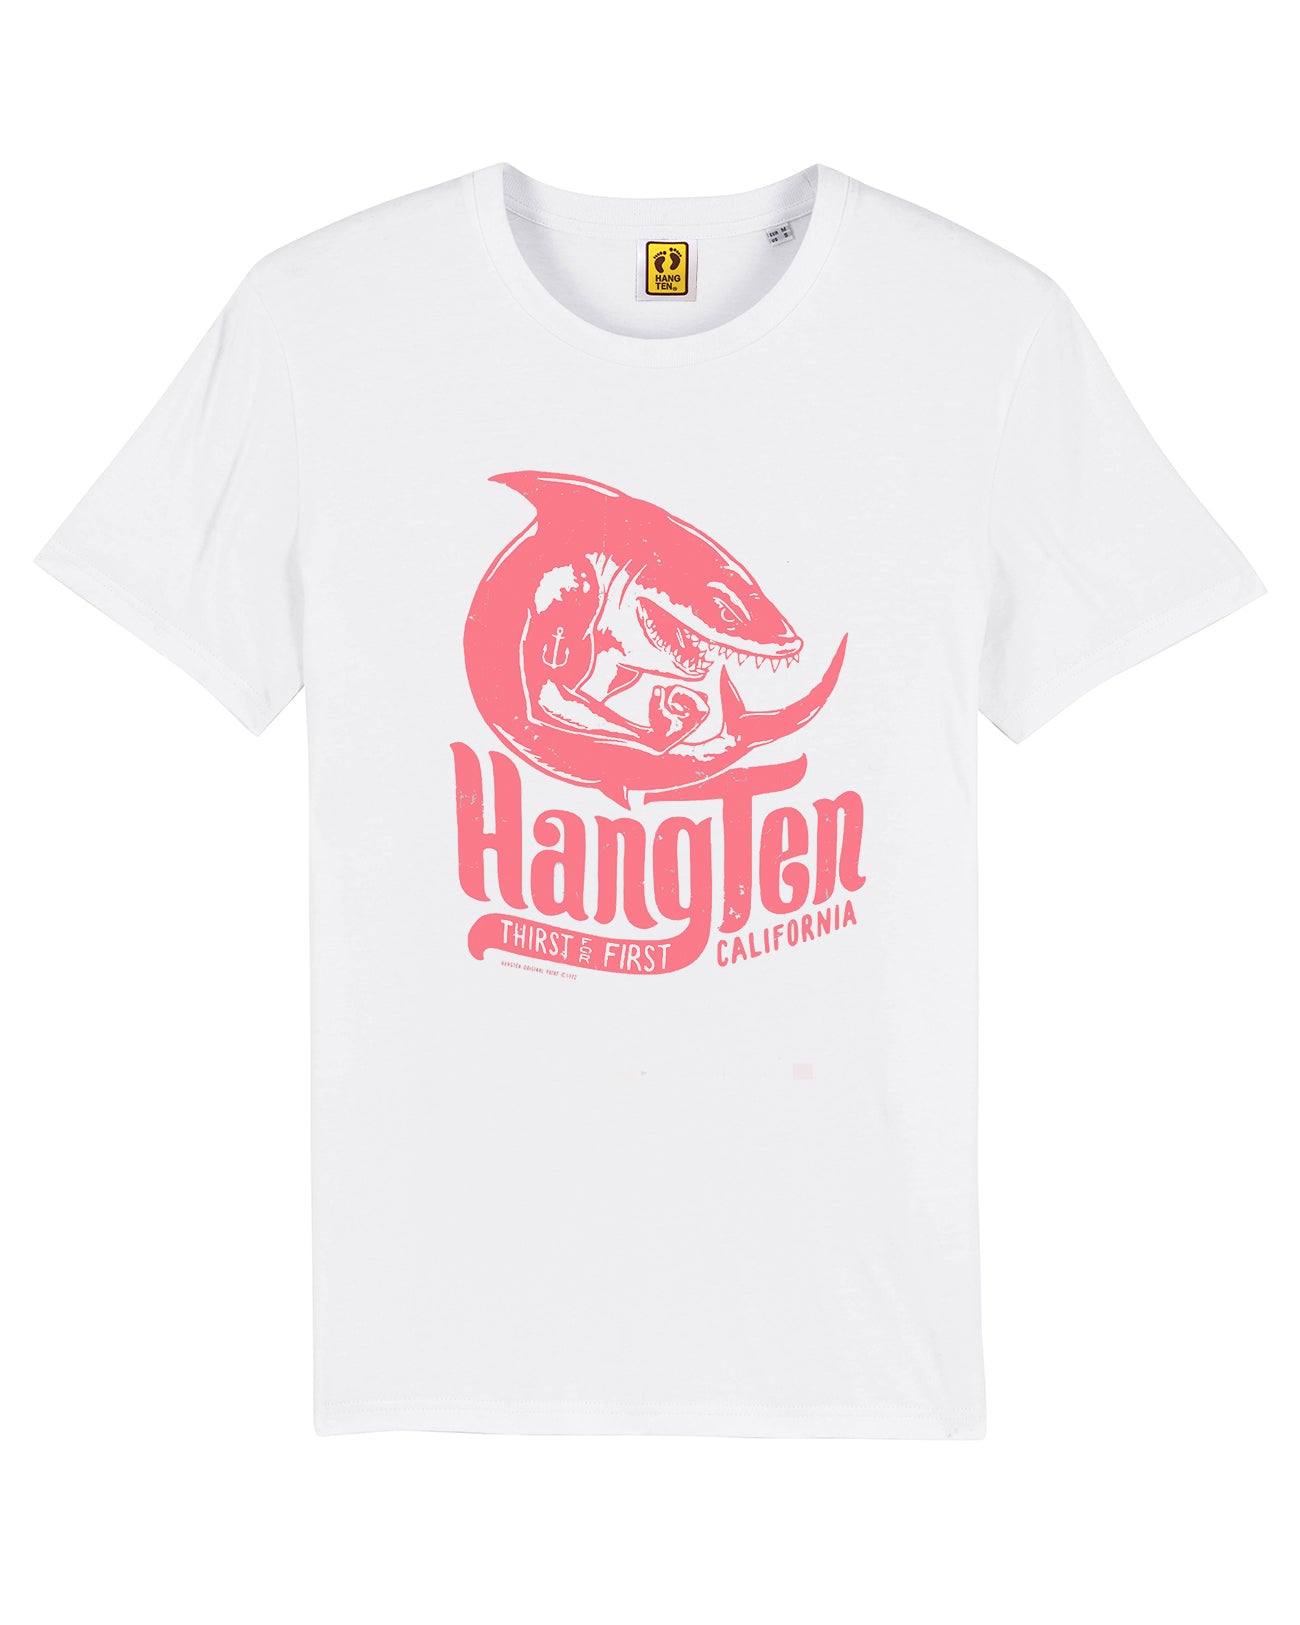 Hang Ten Shark T-shirt – White